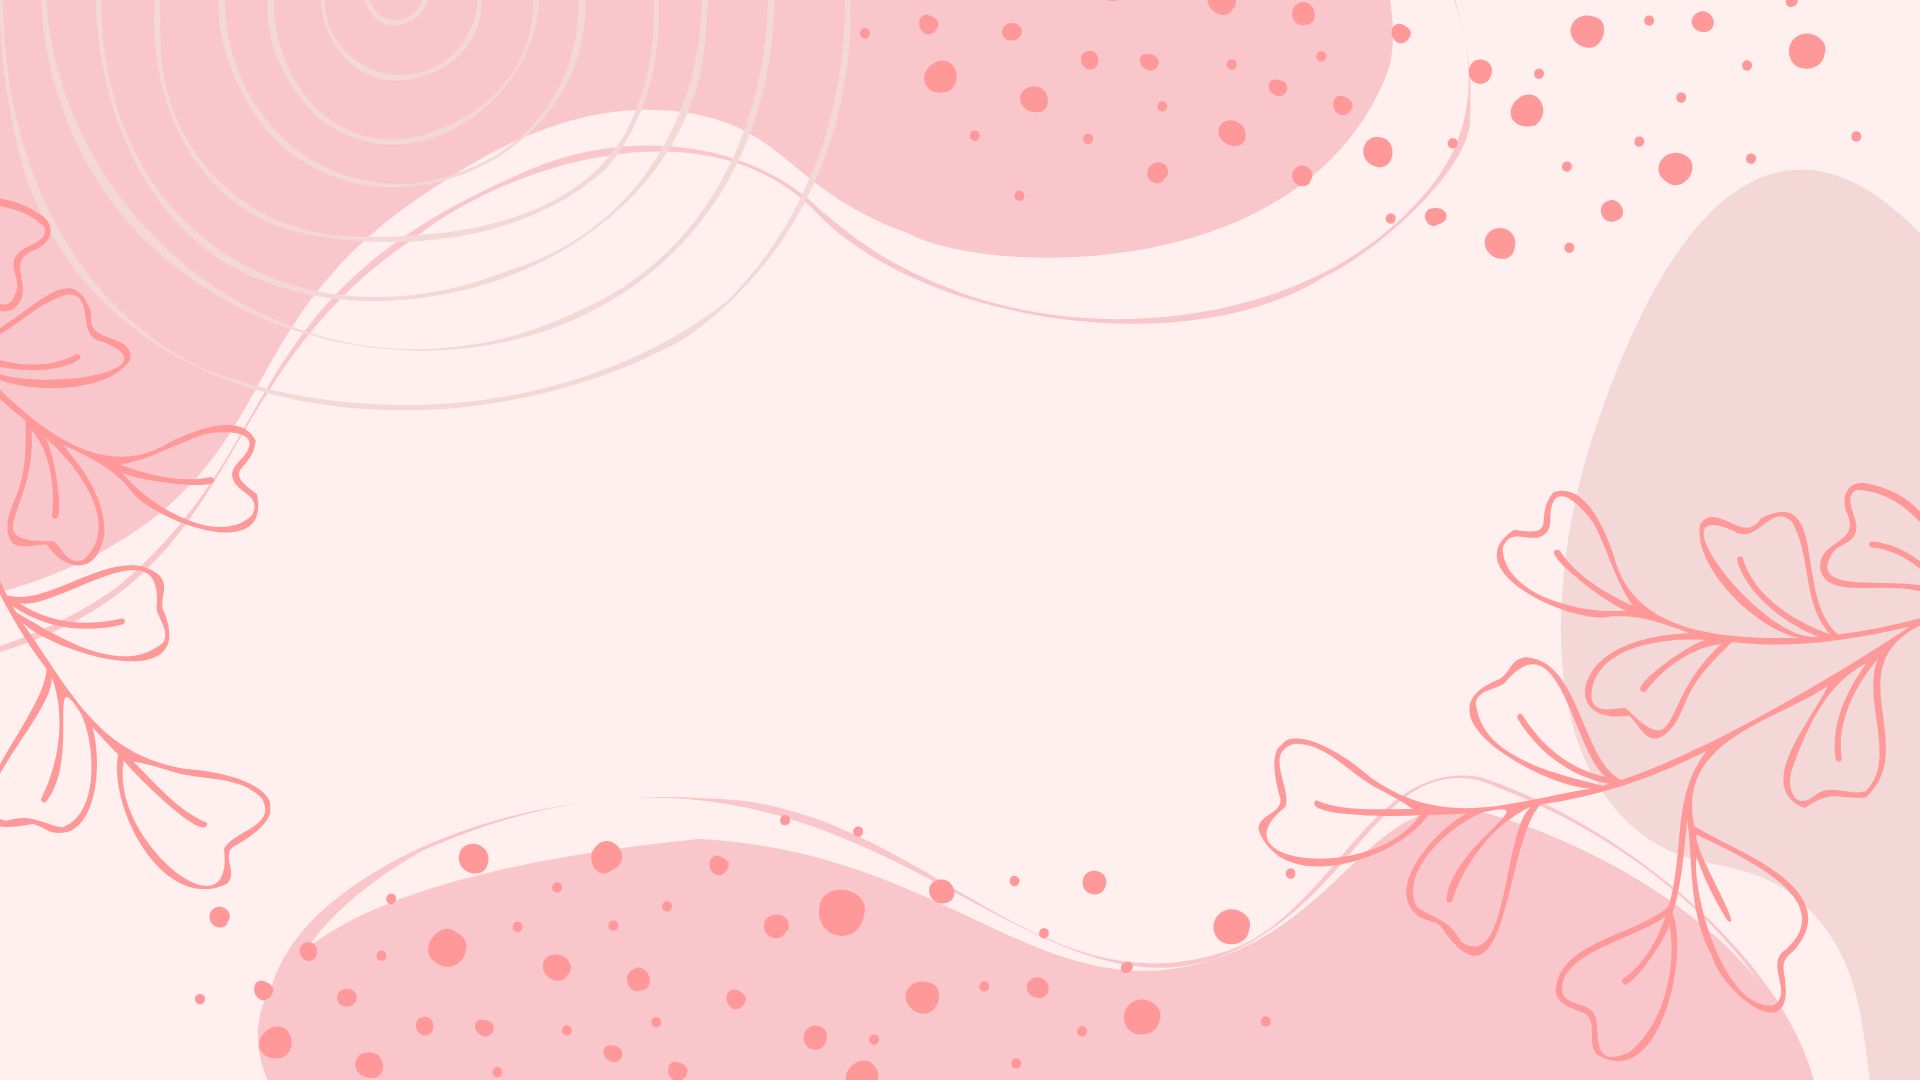 Pink Boho Background in Illustrator, JPG, SVG, EPS, PNG - Download